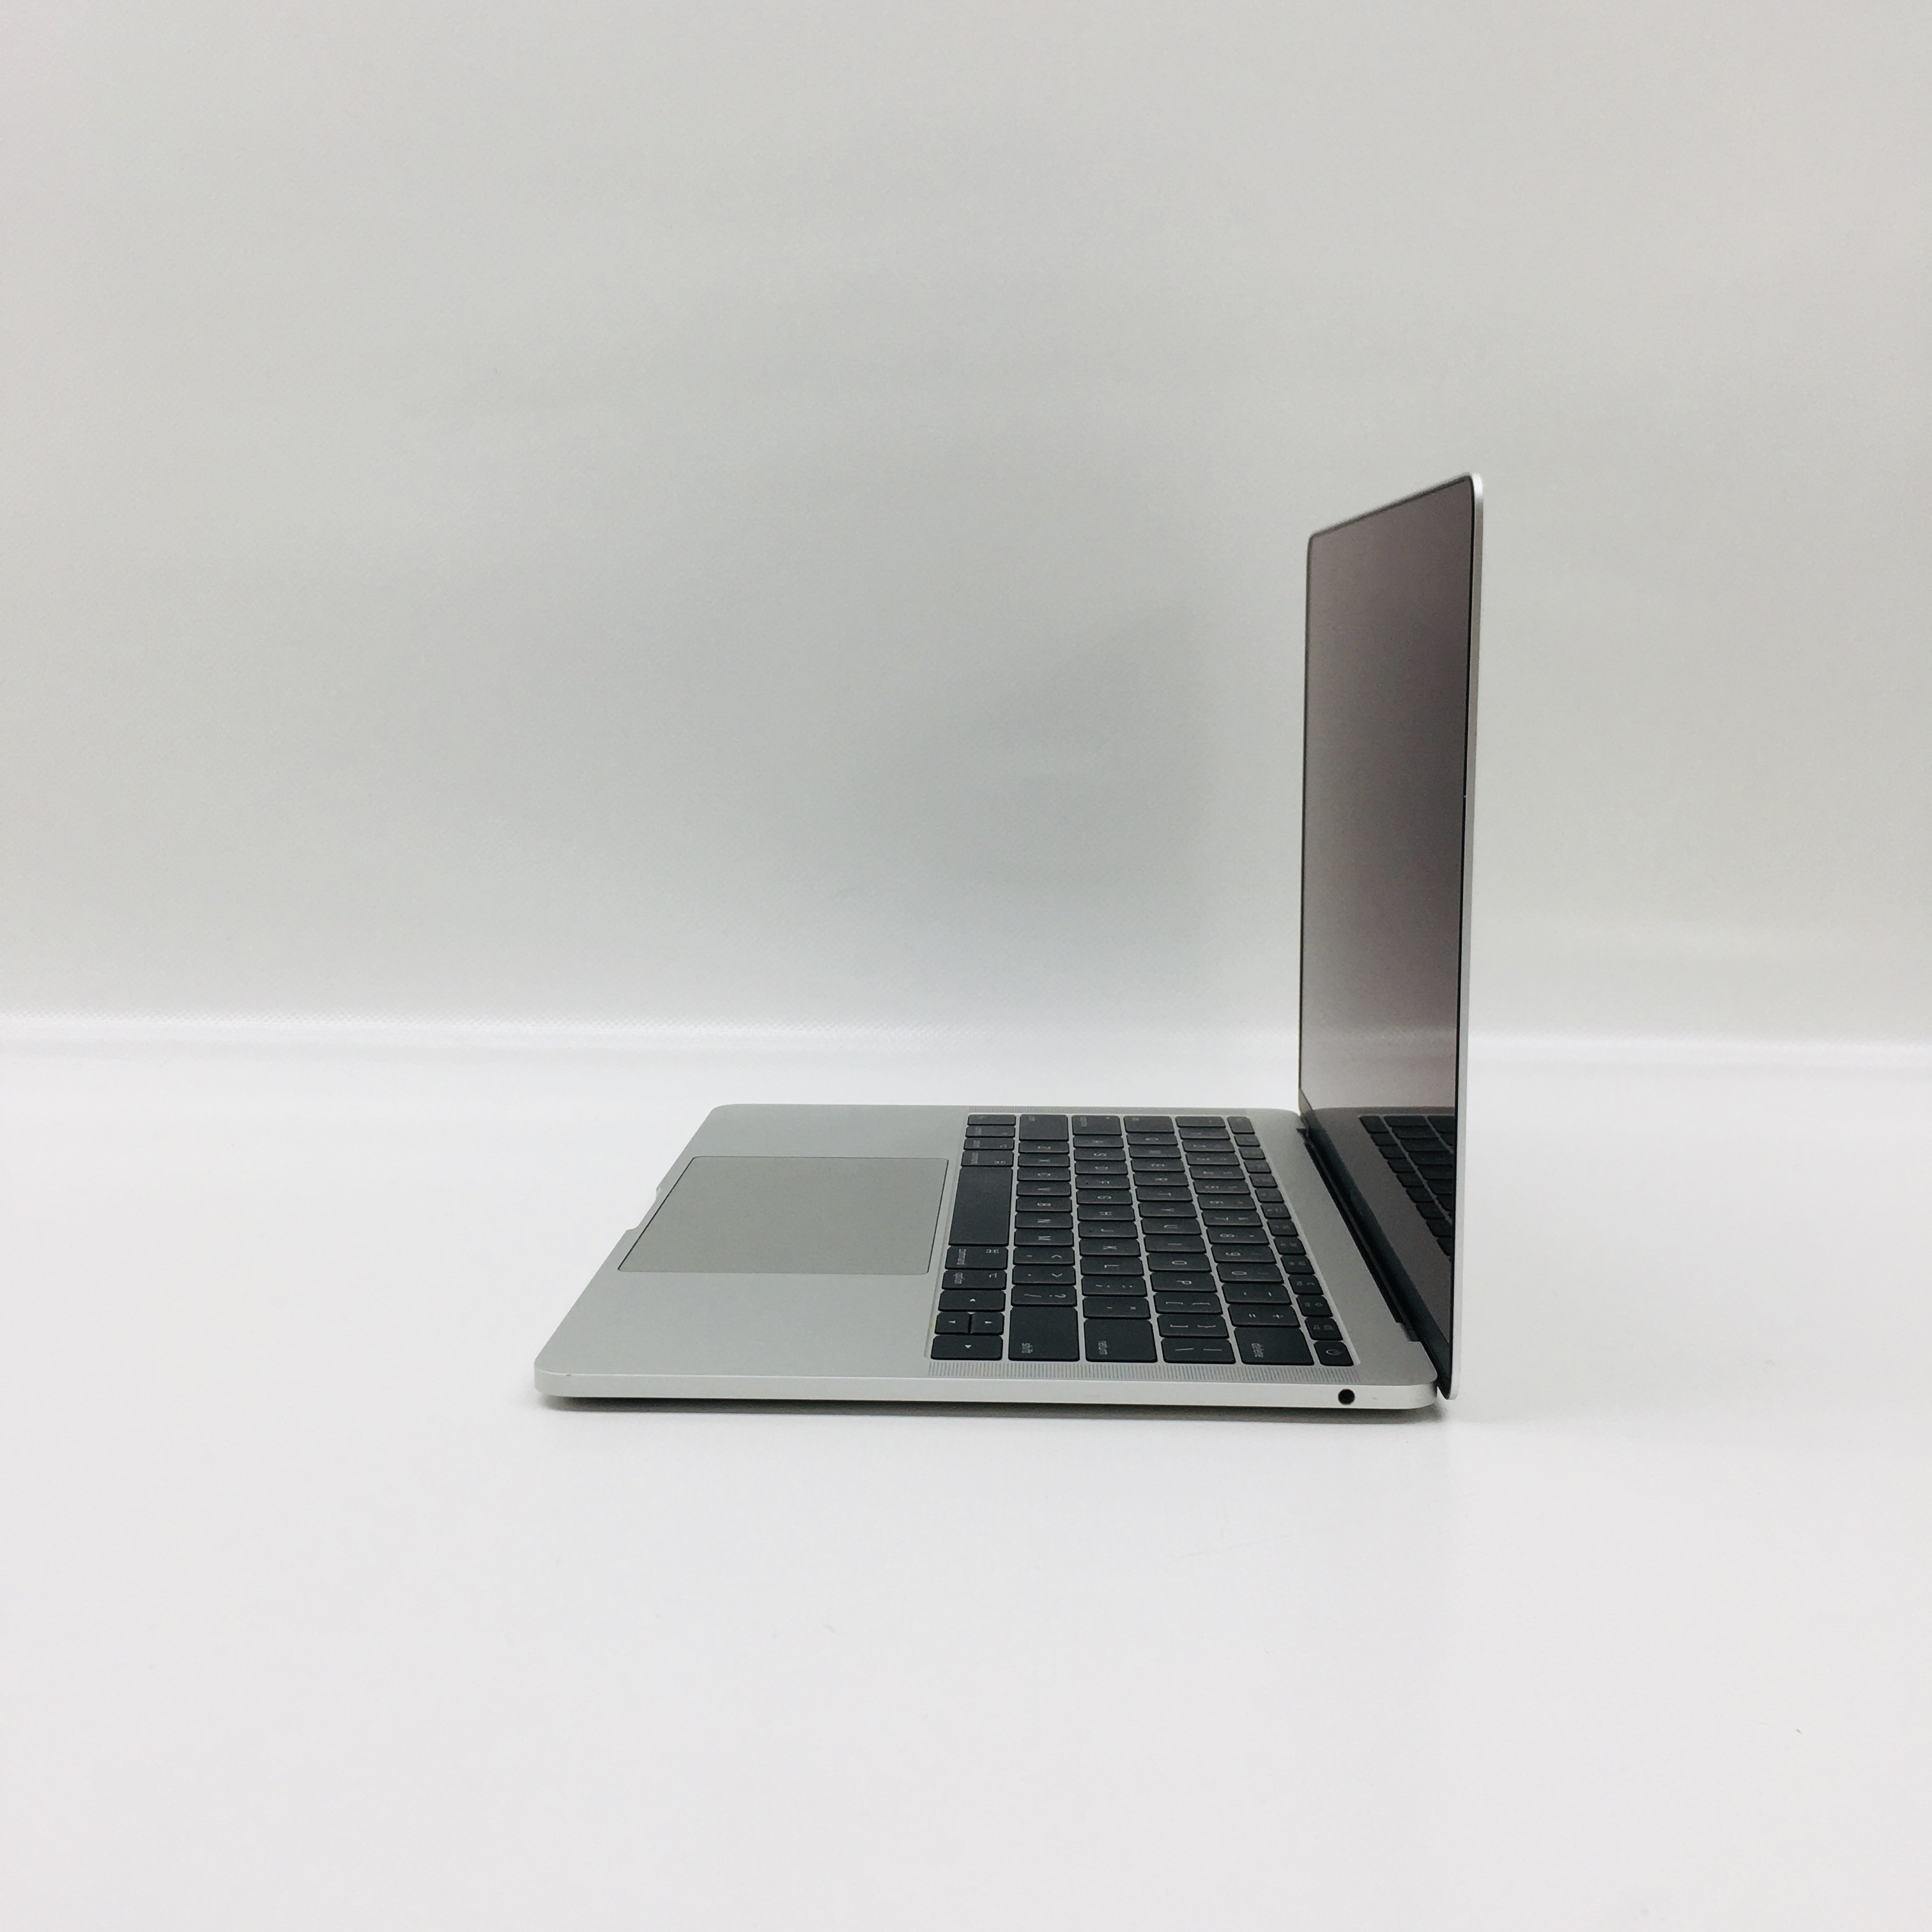 MacBook Pro 13" 2TBT Mid 2017 (Intel Core i5 2.3 GHz 8 GB RAM 256 GB SSD), Silver, Intel Core i5 2.3 GHz, 8 GB RAM, 256 GB SSD, image 4